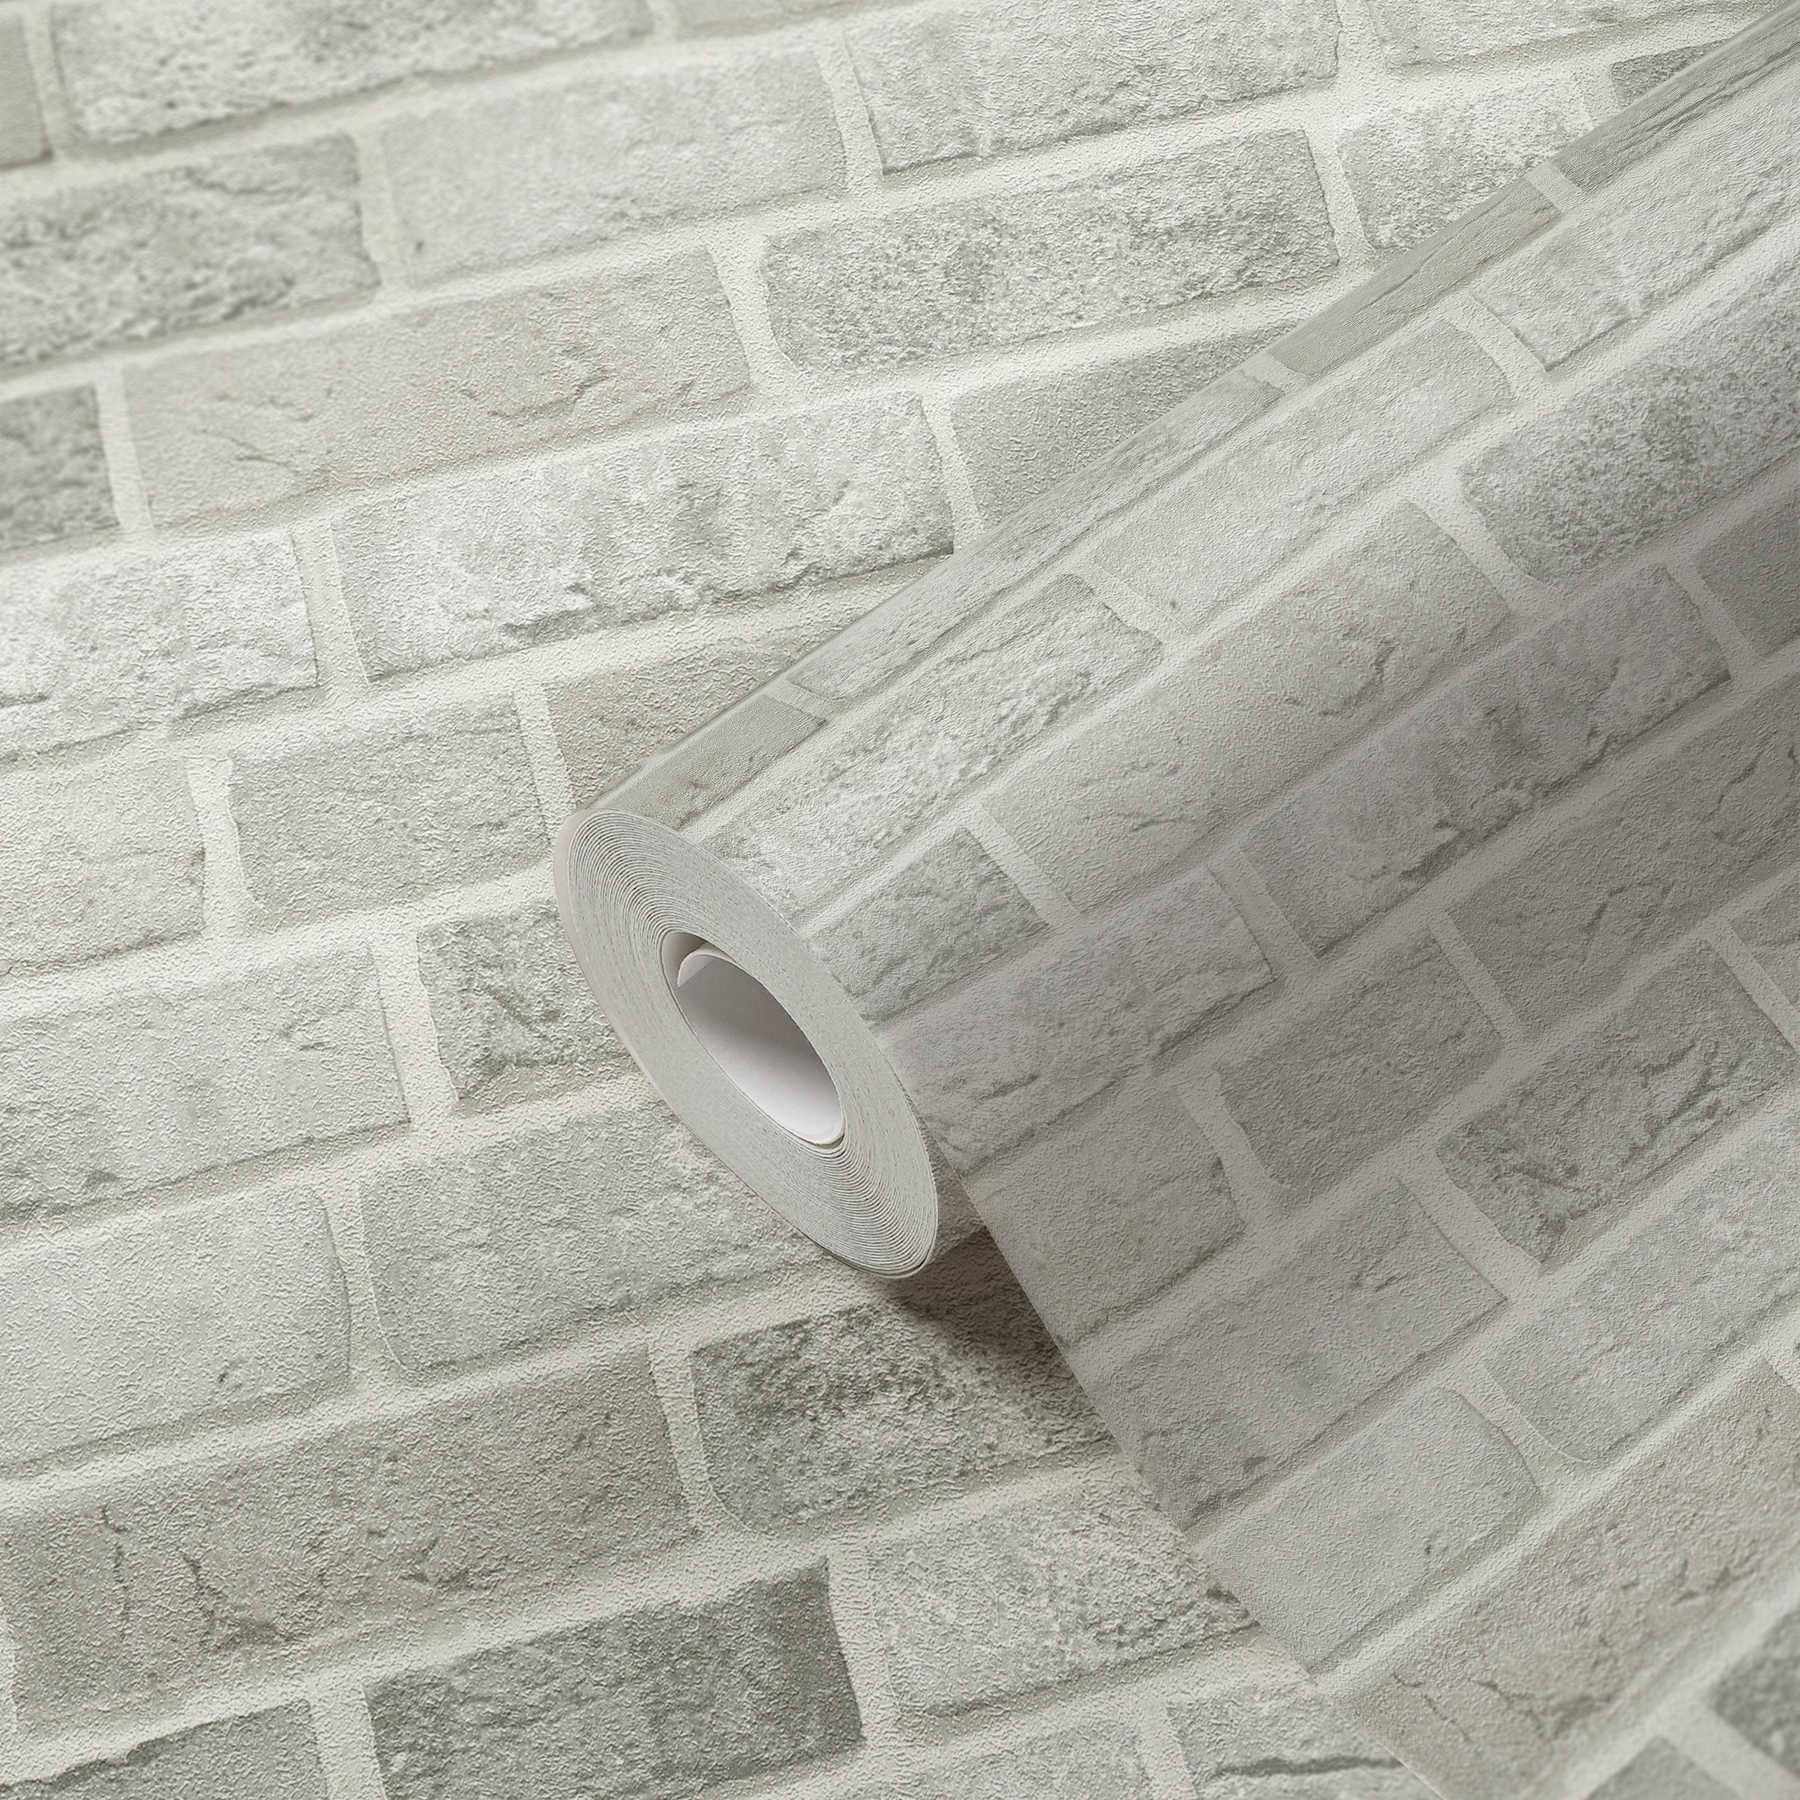             behang bakstenen muur ontwerp 3D steen look - grijs, wit
        